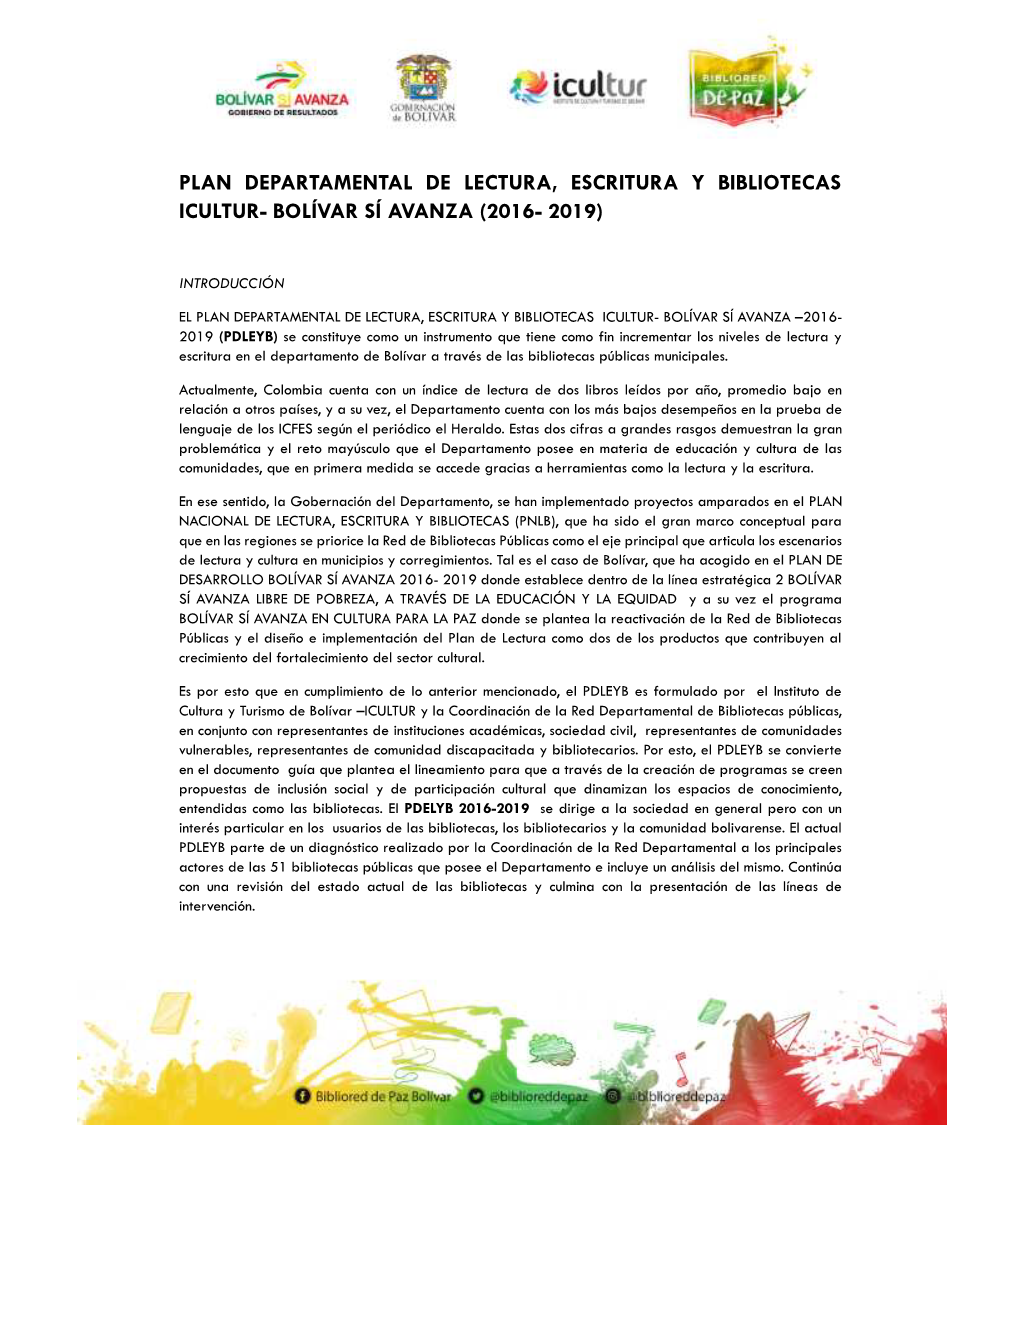 Plan Departamental De Lectura, Escritura Y Bibliotecas Icultur- Bolívar Sí Avanza (2016- 2019)